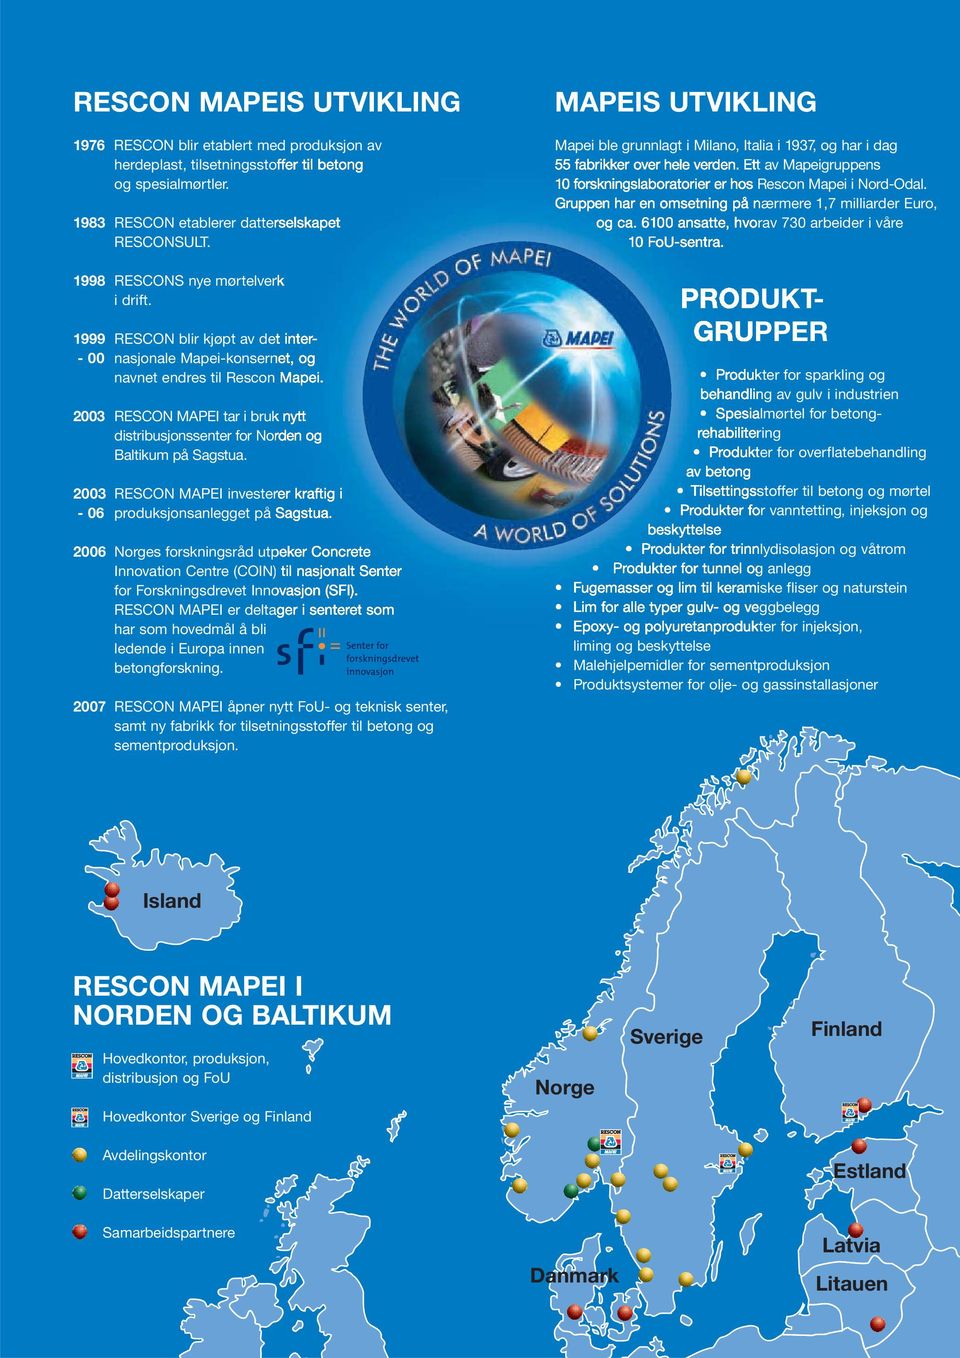 2006 Norges forskningsråd utpeker Concrete Innovation Centre (COIN) til nasjonalt senter Senterfor forskningsdrevet Forskningsdrevet innovasjon. Innovasjon RESCON (SFI).